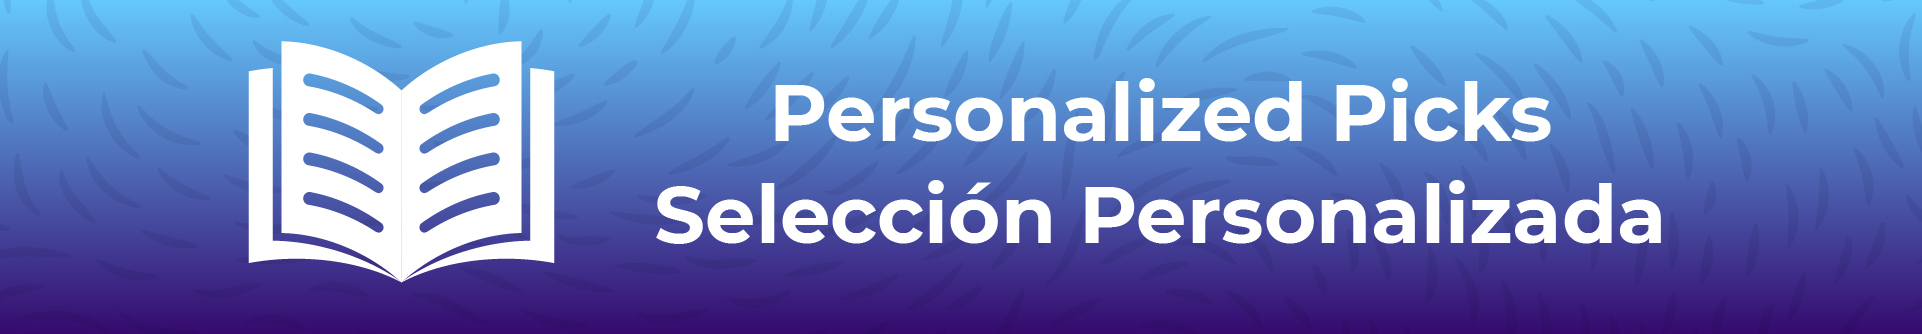 Personalized picks, Seleccion personalizada